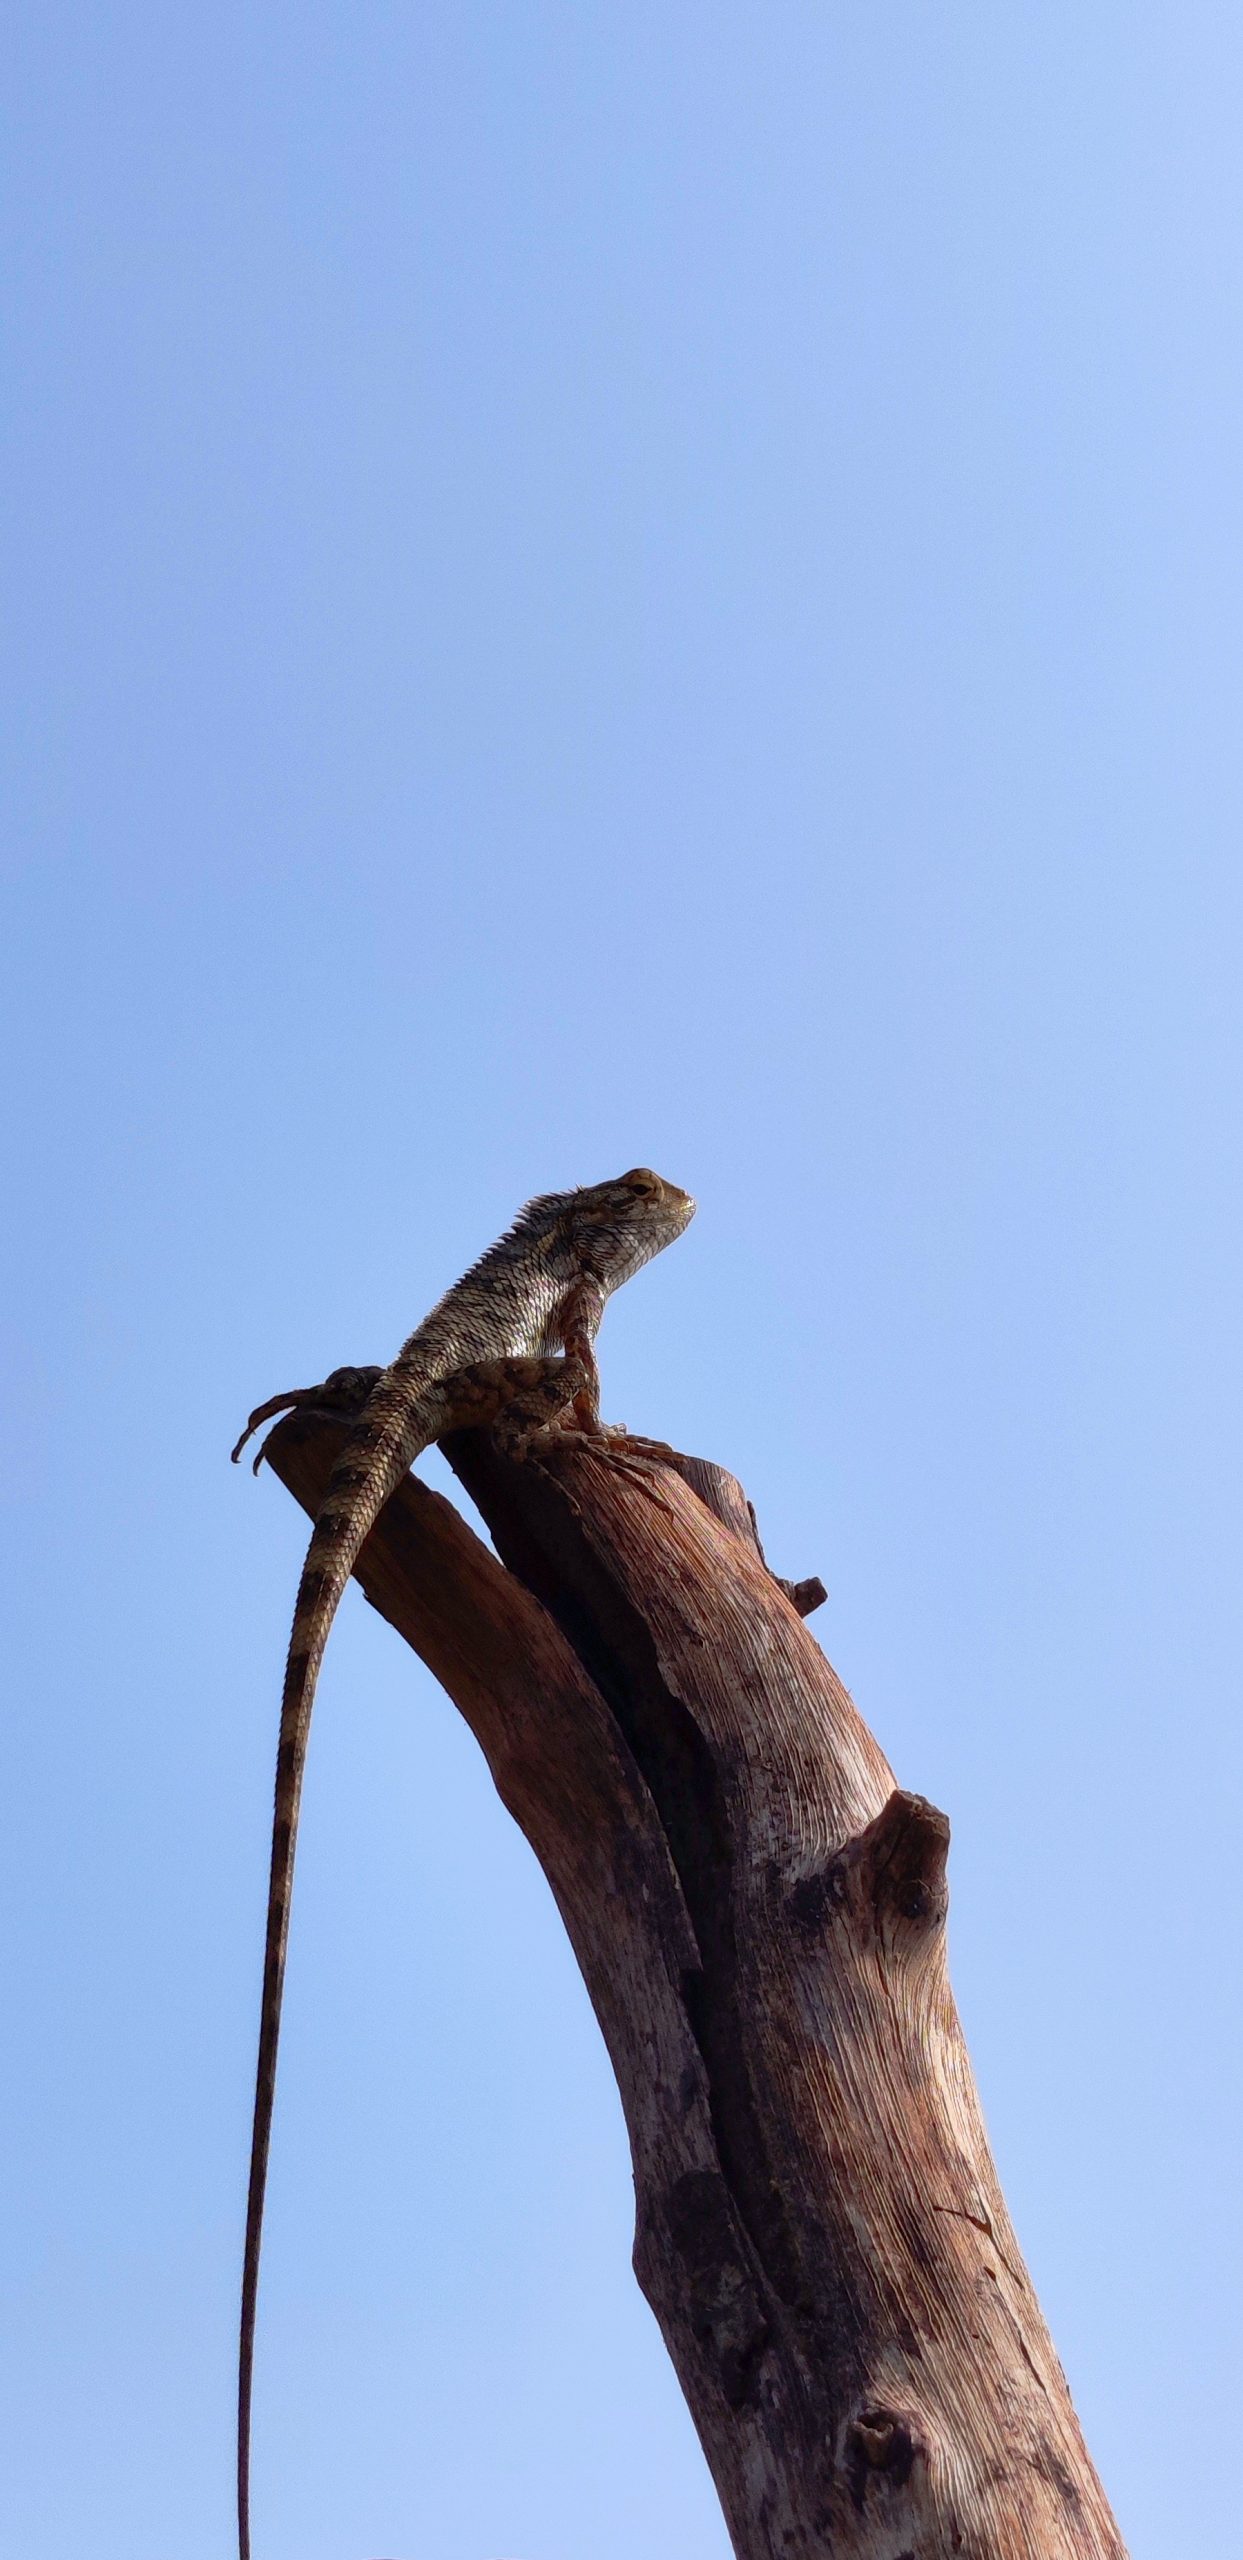 A lizard on a dry wood